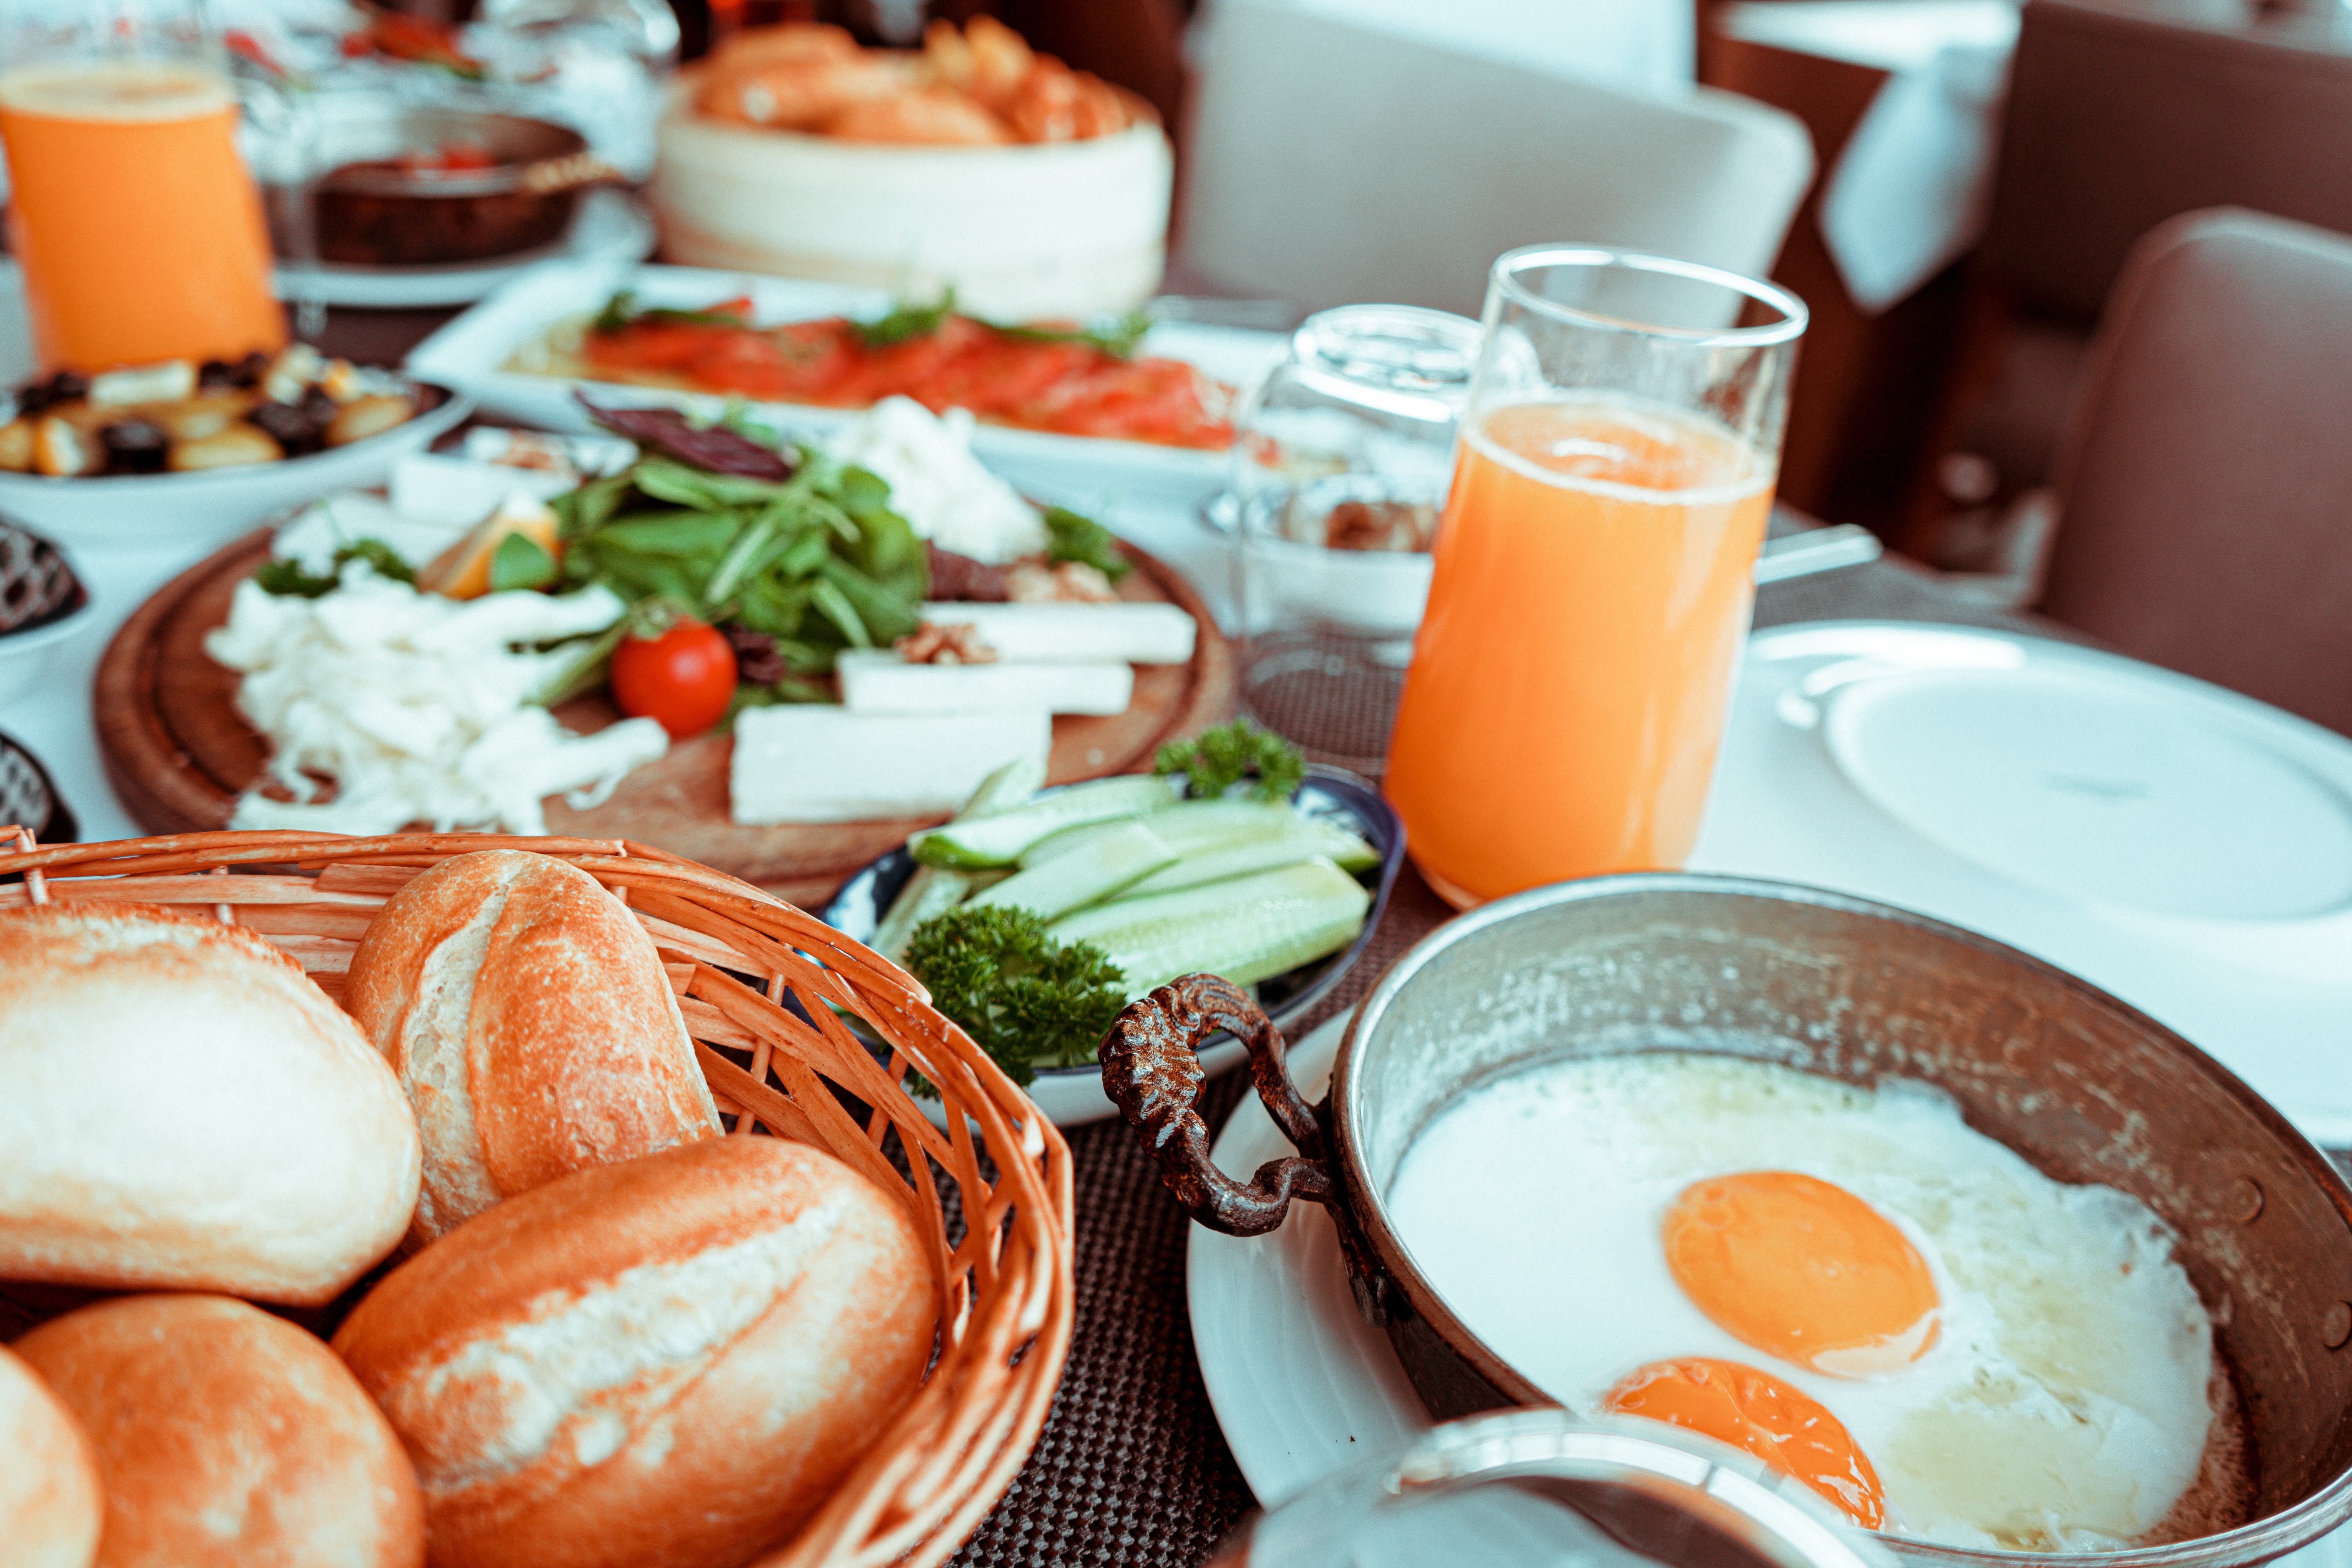 Un desayuno saludable debe ser variado, completo, equilibrado y satisfactorio. (Foto Prensa Libre: Pexels)